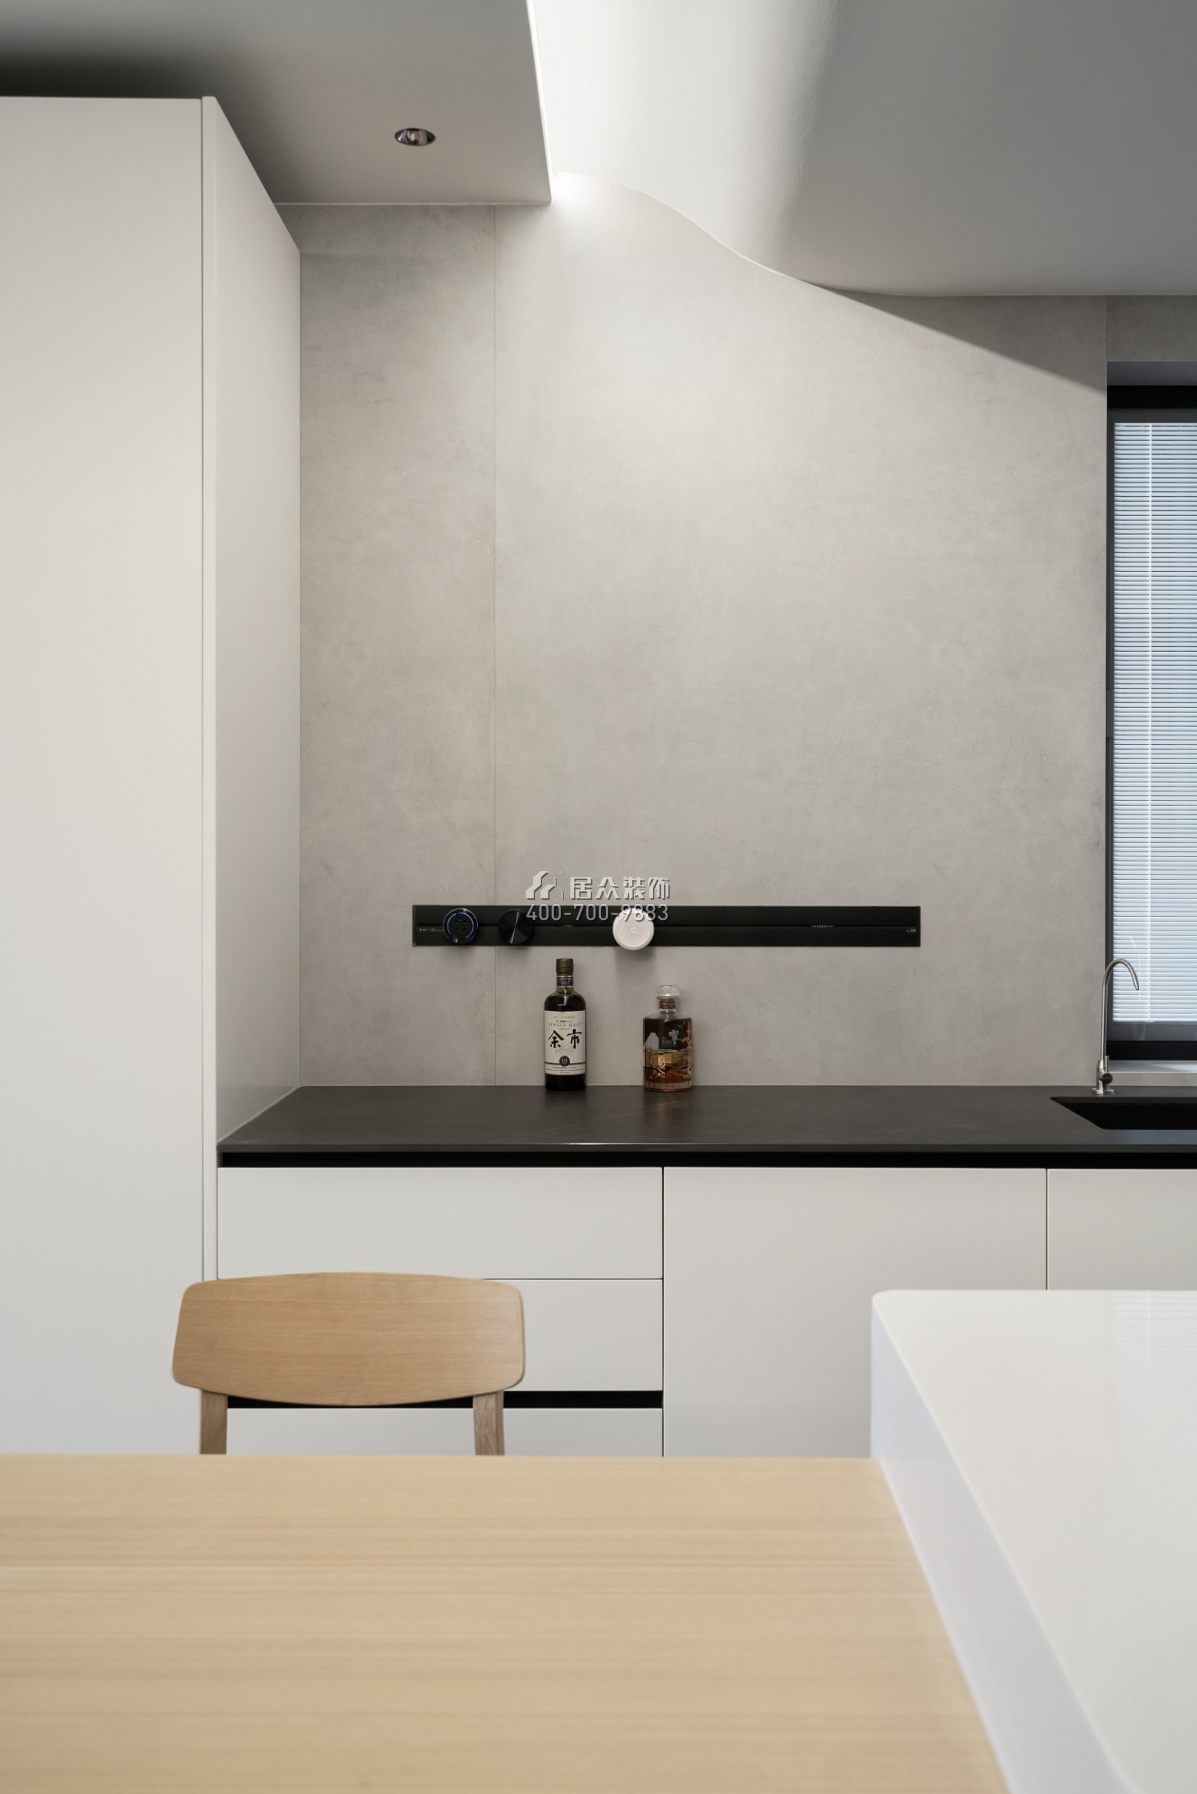 黄埔雅苑一期120平方米现代简约风格平层户型厨房装修效果图